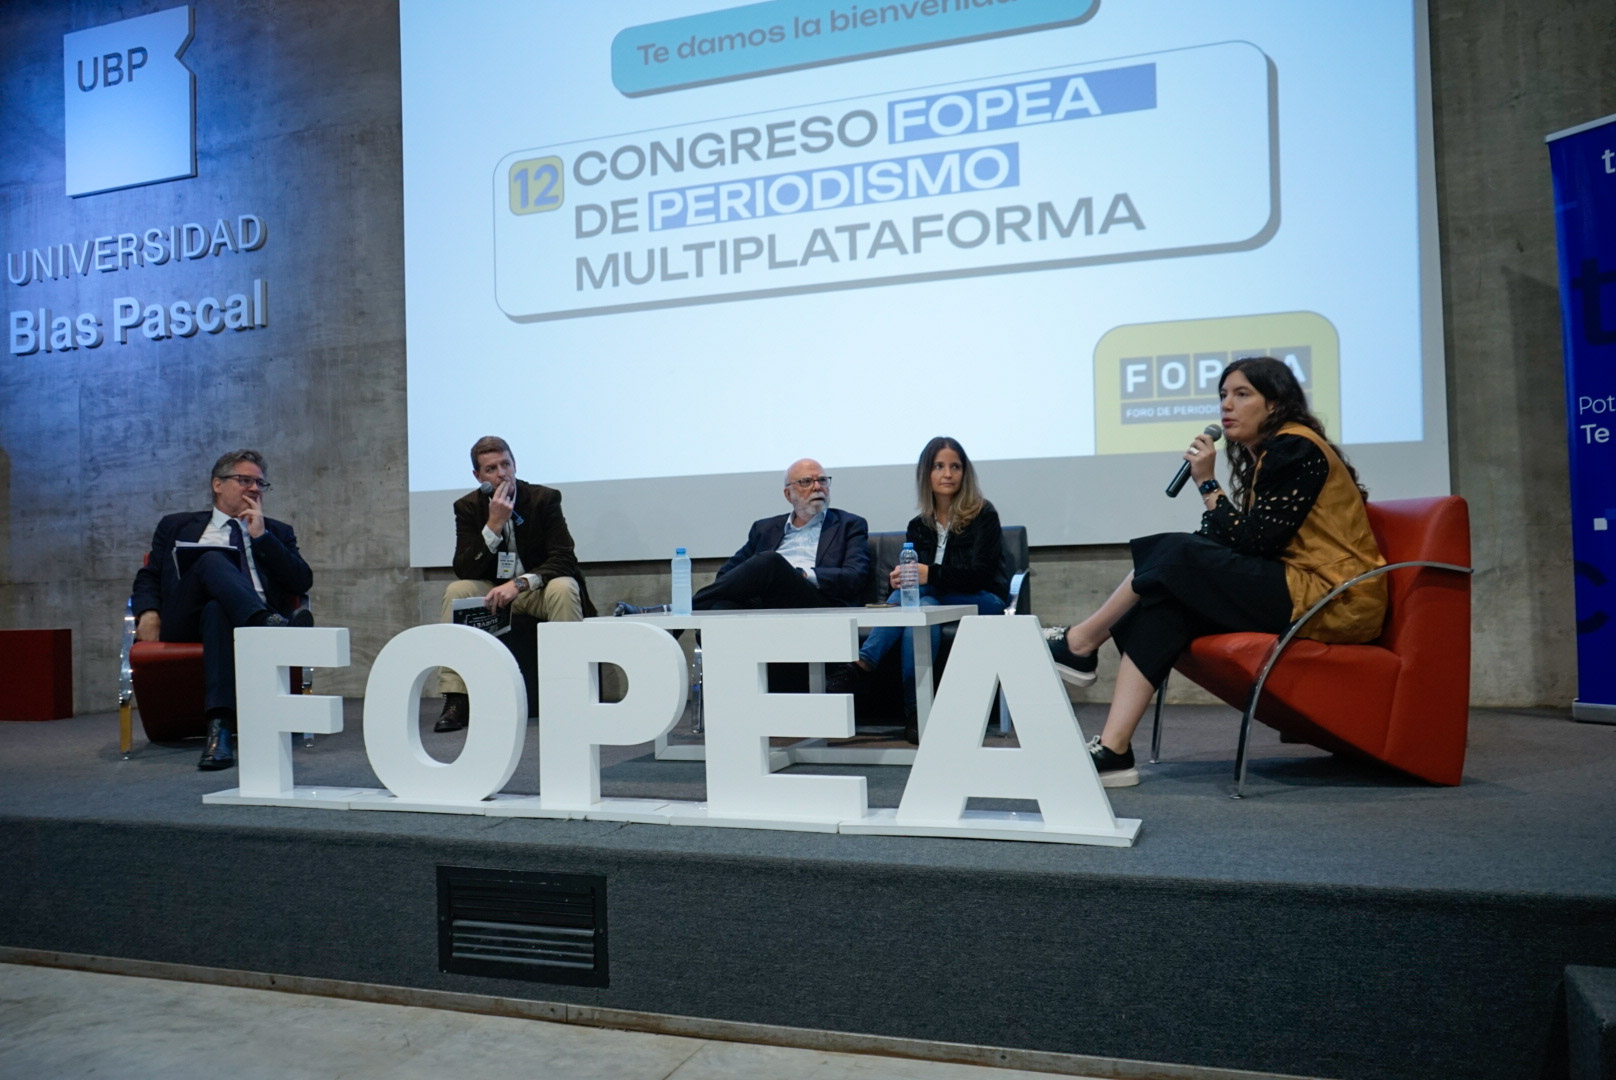 FOPEA lanza el 13 Congreso de Periodismo Multiplataforma: “Periodismo en tiempos de Streaming” en la Universidad Blas Pascal